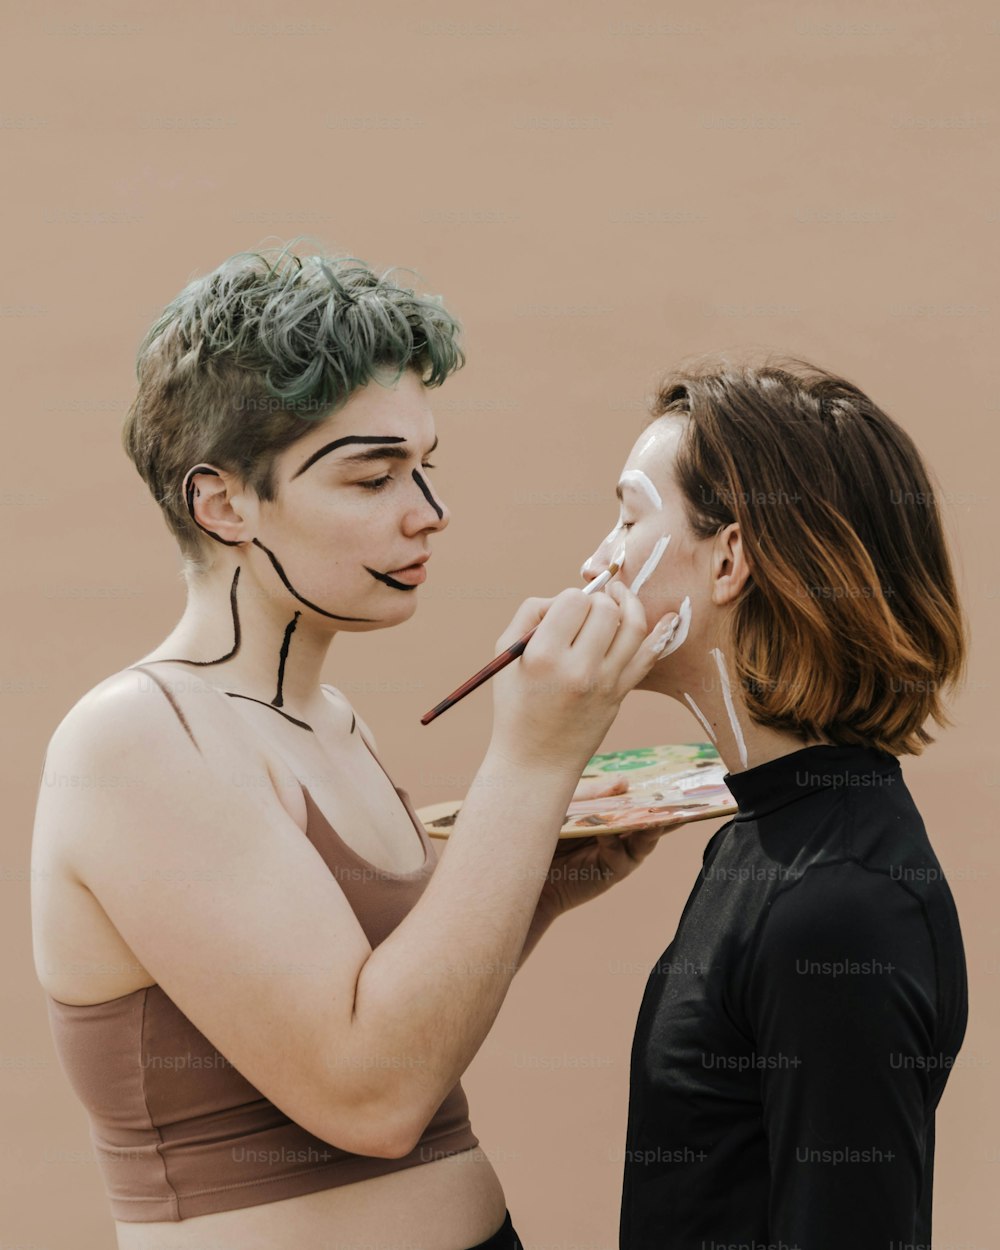 Une femme peint le visage d’une autre femme avec de la peinture blanche